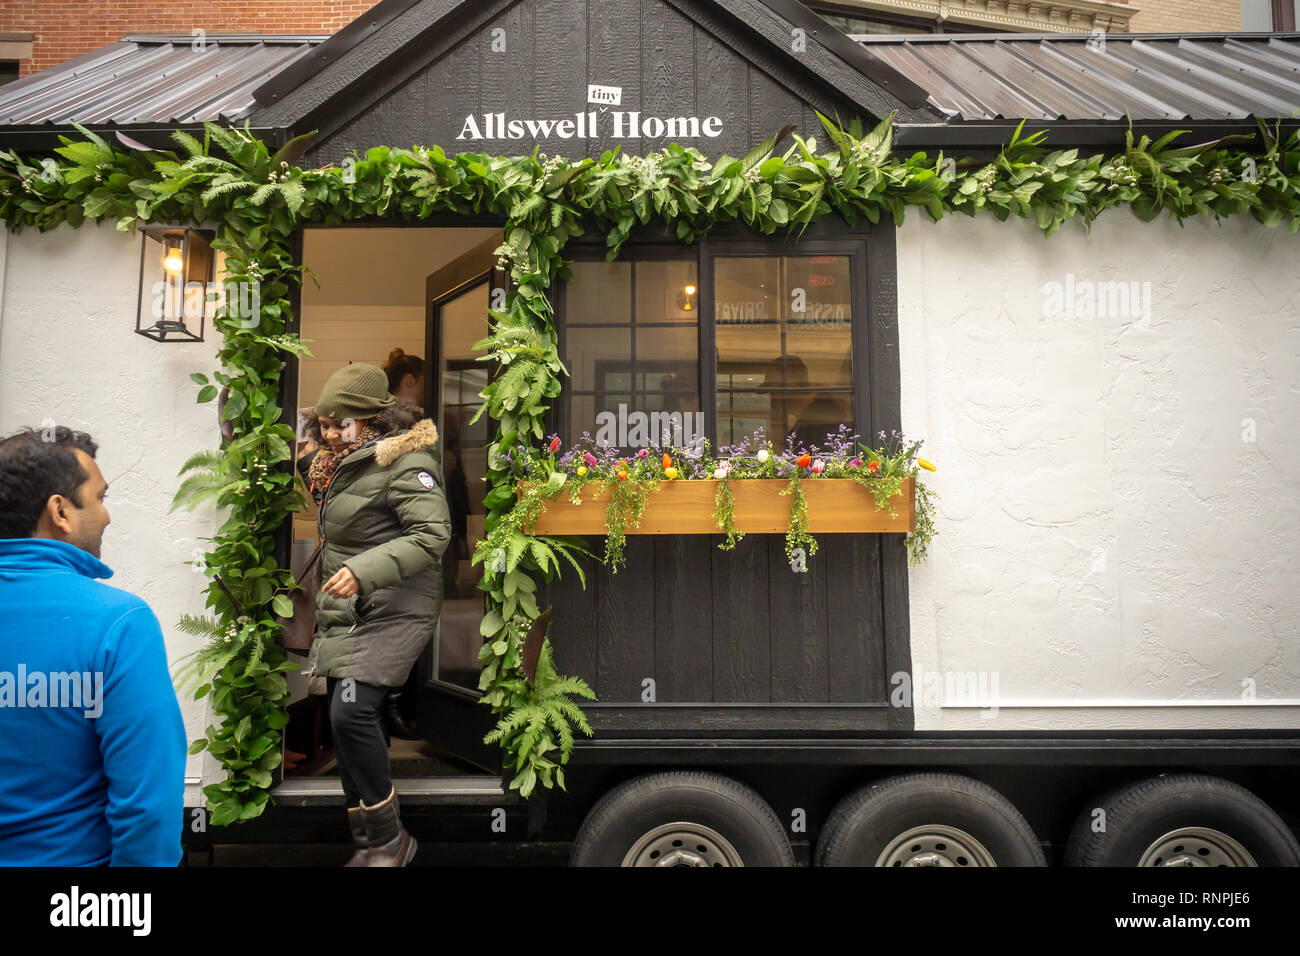 Los visitantes del colchón online retailer pequeña casita Allswell Tour en  su parada en Nueva York, en Union Square, el jueves, 7 de febrero de 2019.  Allswell es propiedad del gigante minorista